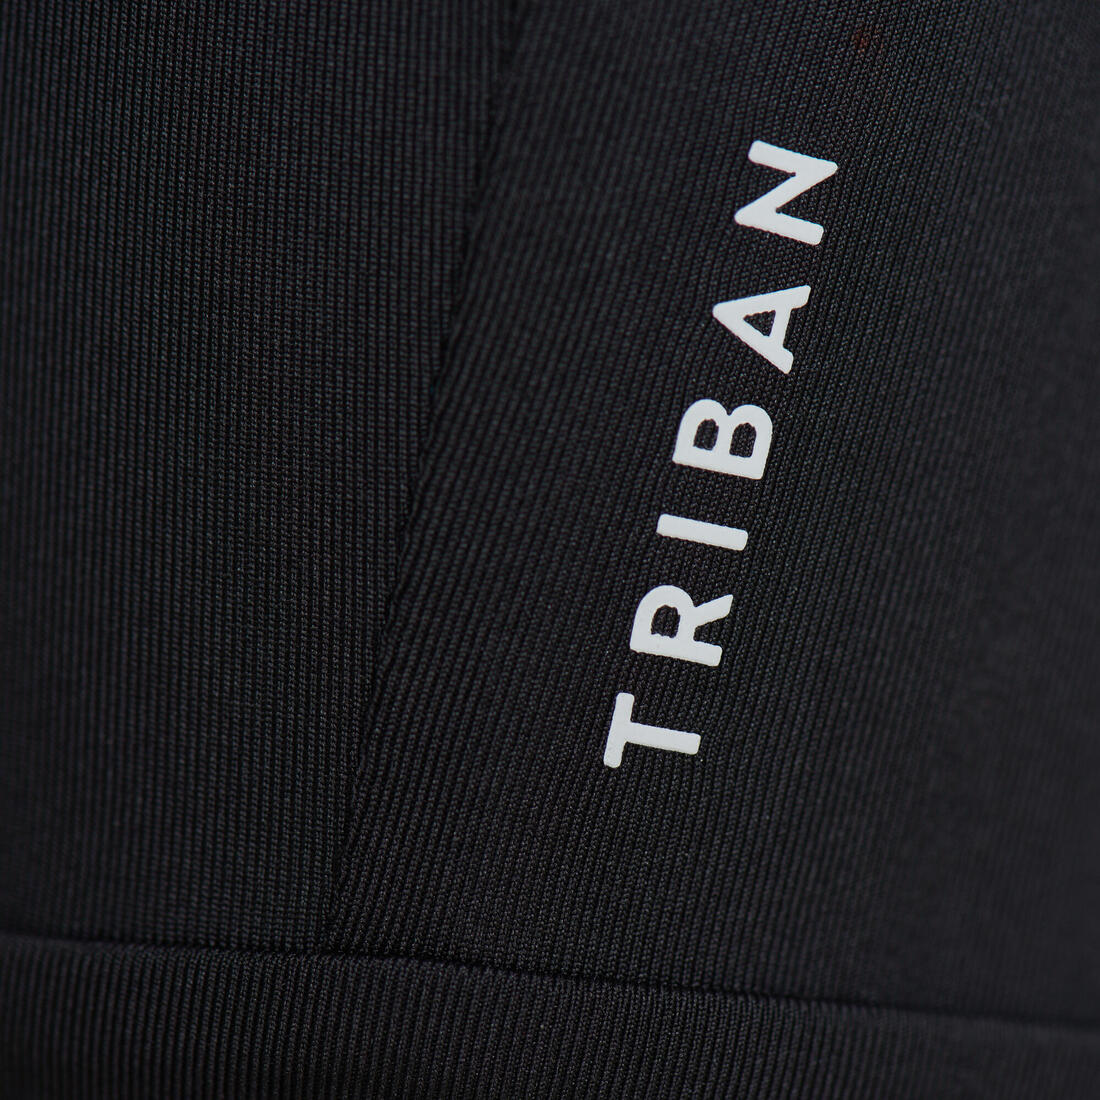 TRIBAN(トリバン) ロードバイク サイクリングショーツ ビブなし Essential メンズ